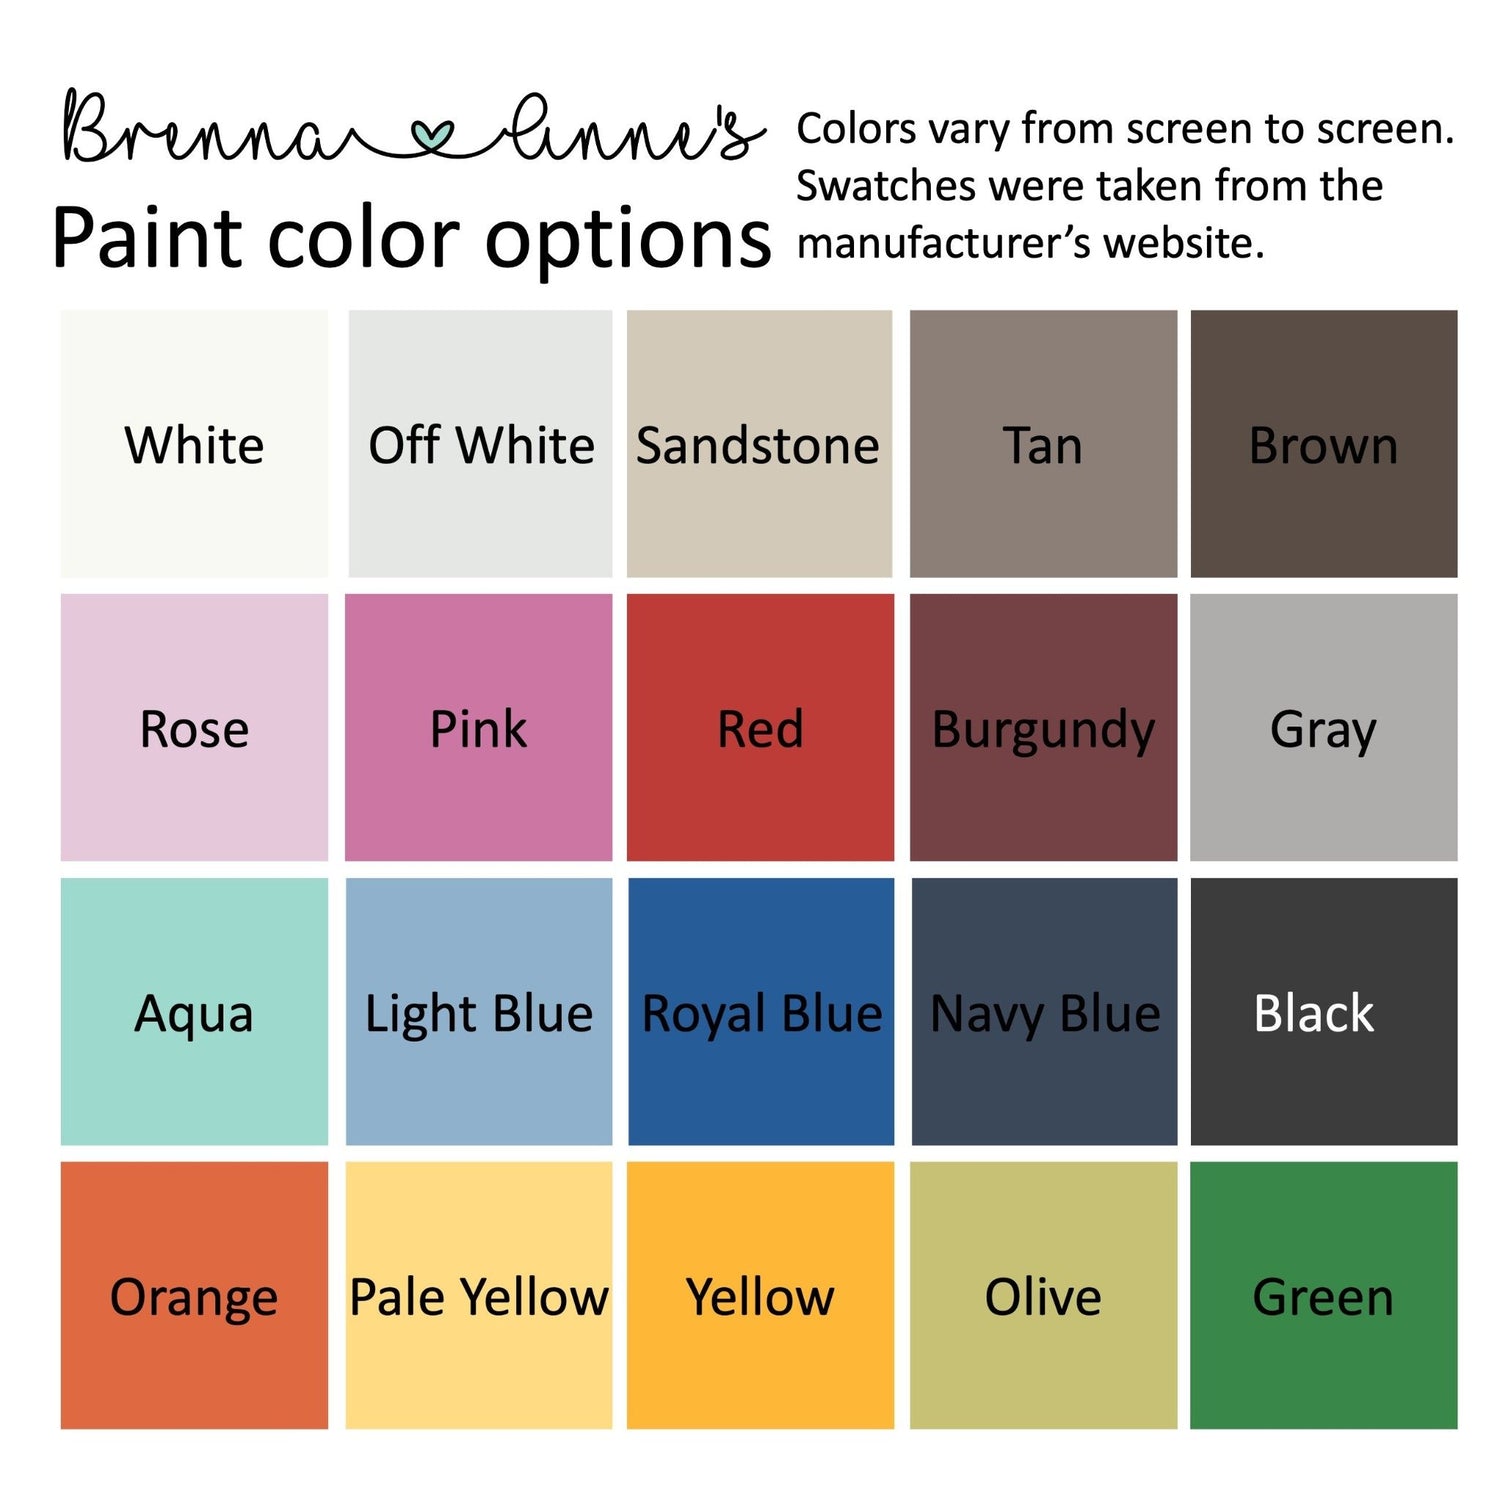 Paint color options